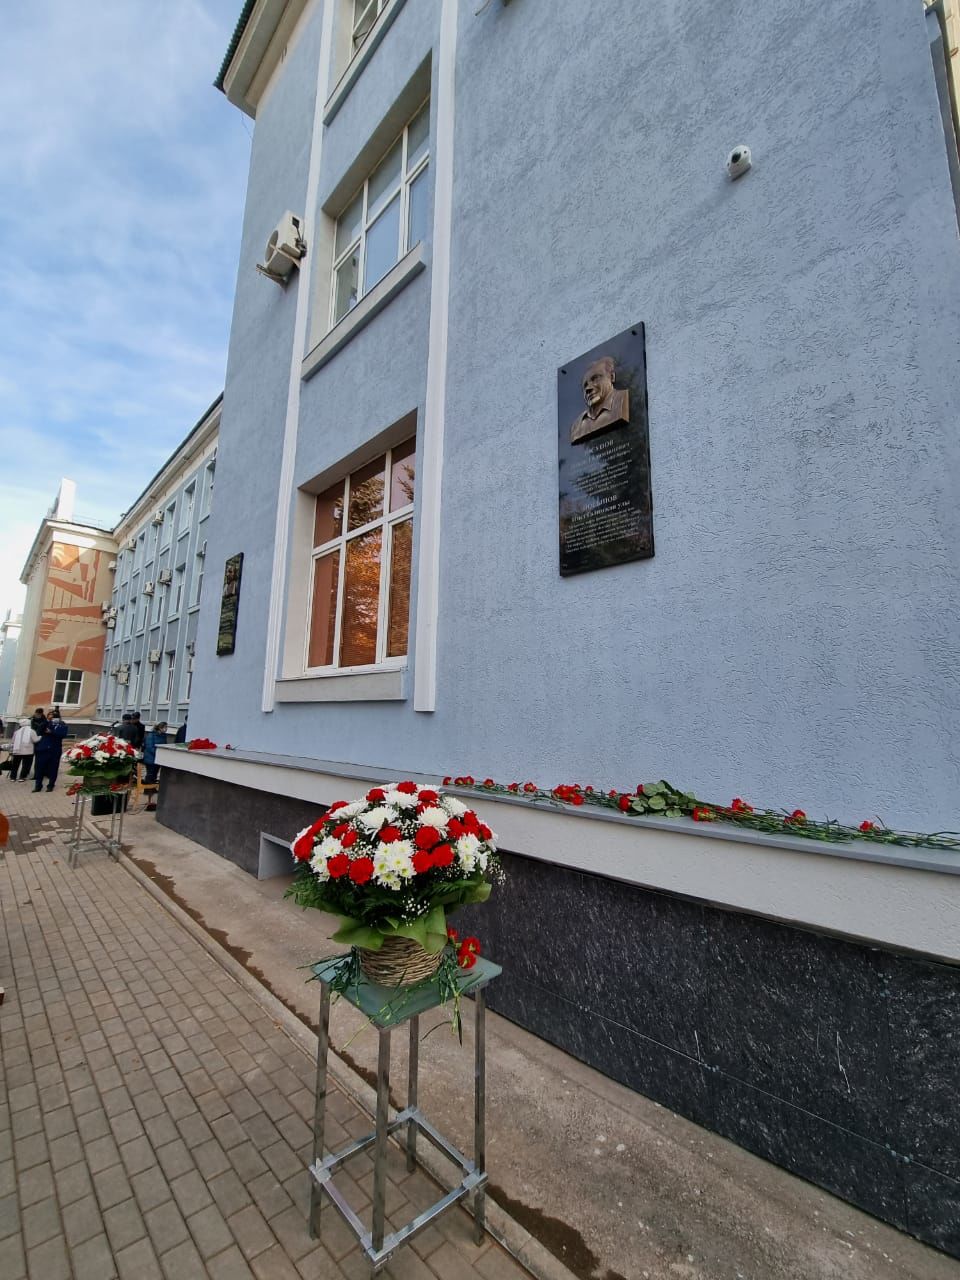 В Бугульме открыли памятные доски бывшим руководителям научного института «ТатНИПИнефть»